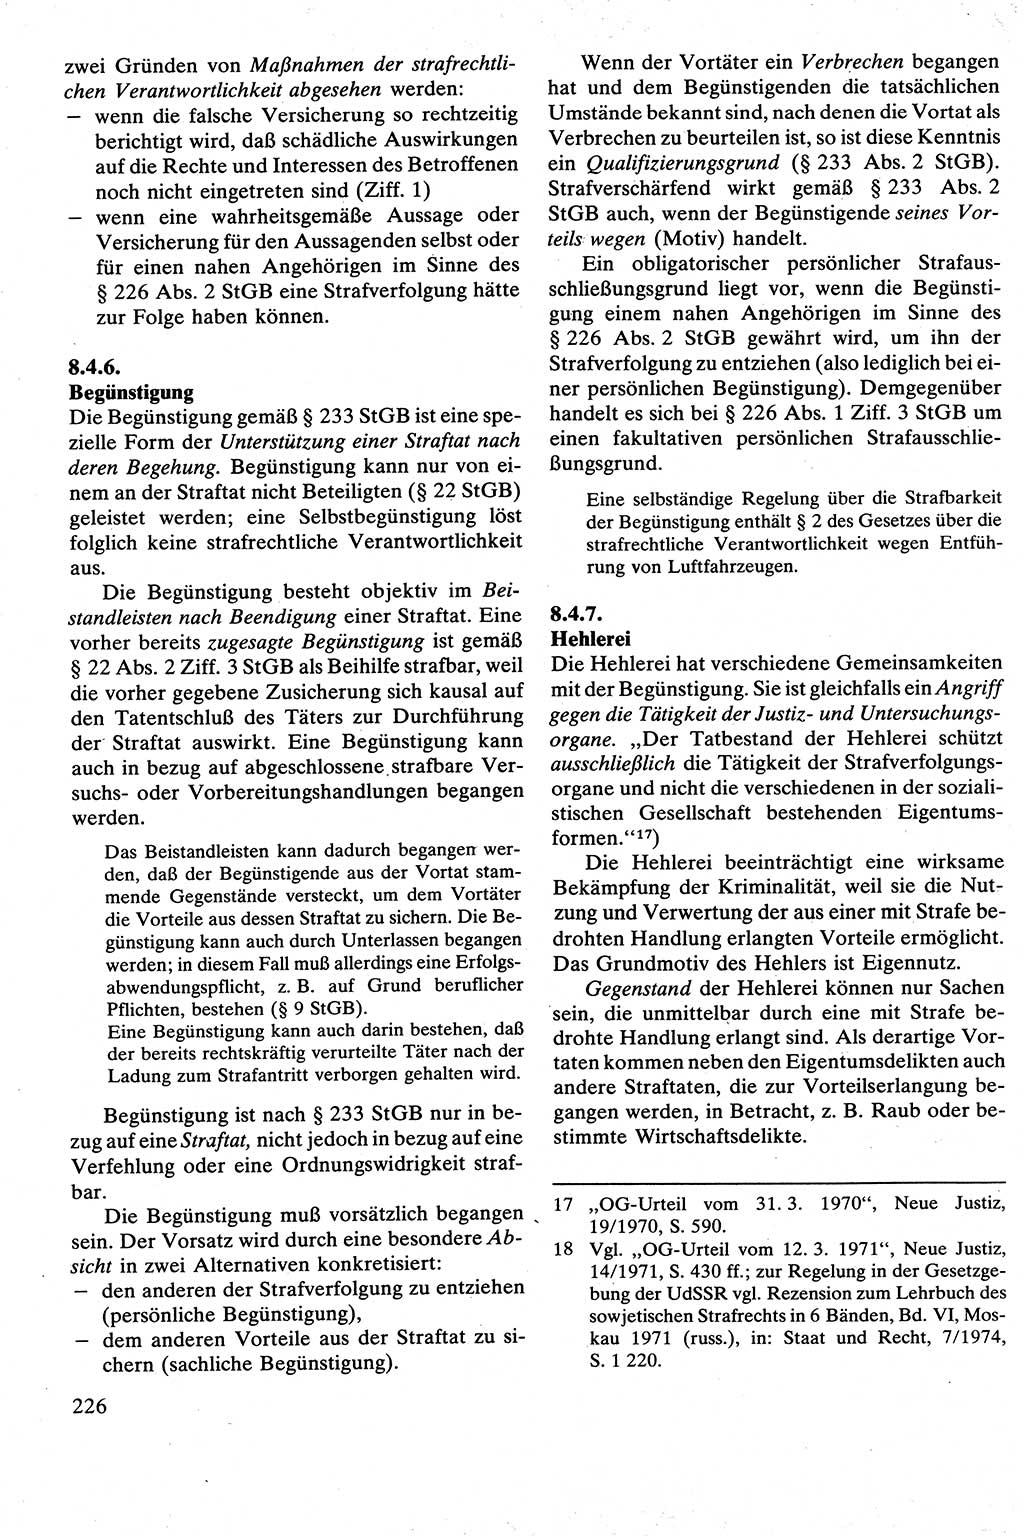 Strafrecht [Deutsche Demokratische Republik (DDR)], Besonderer Teil, Lehrbuch 1981, Seite 226 (Strafr. DDR BT Lb. 1981, S. 226)